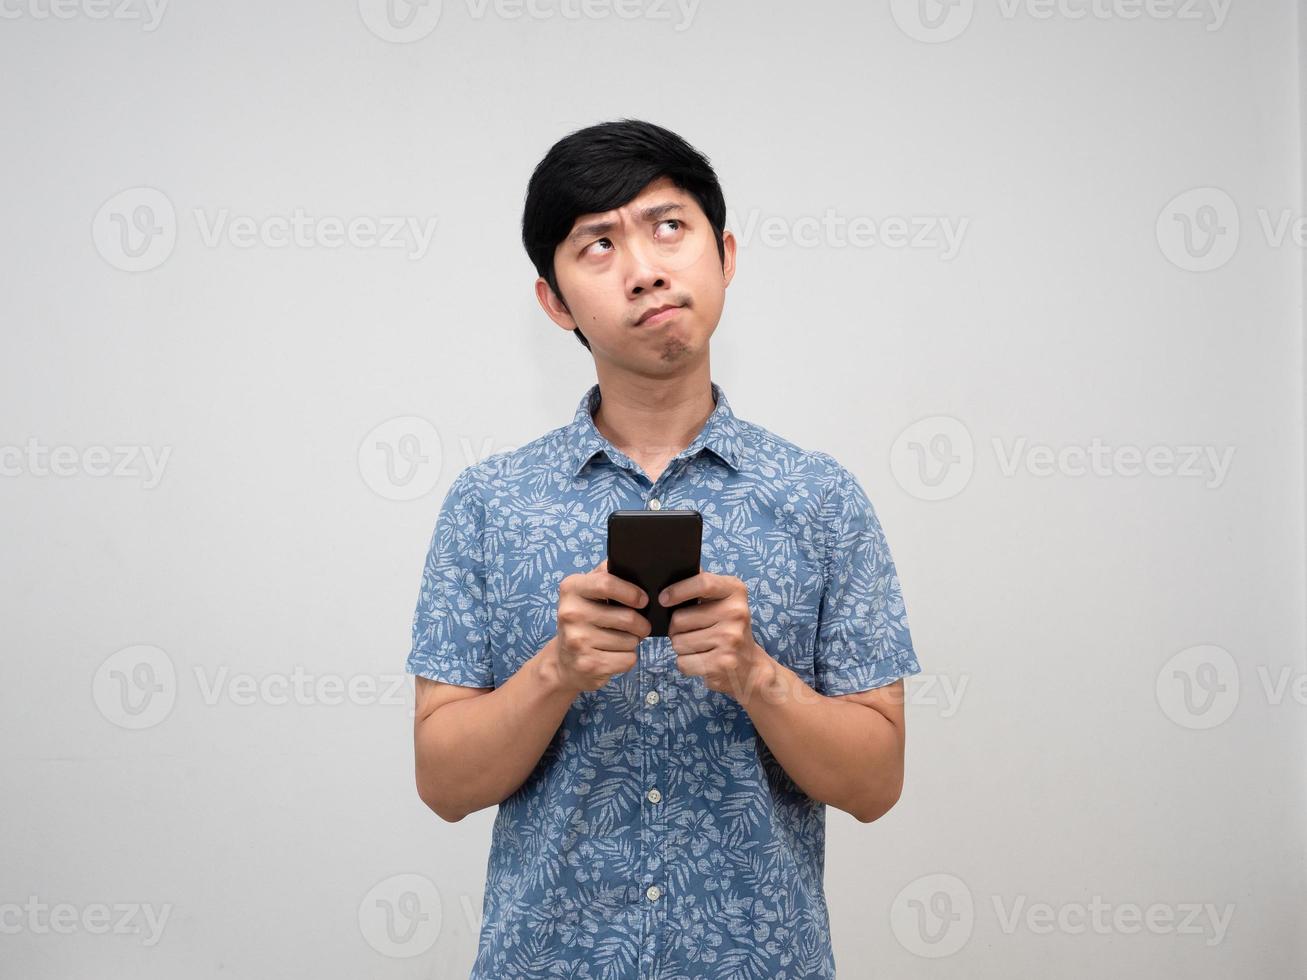 homme asiatique chemise bleue tenant un geste de téléphone portable pensant quelque chose et se sent confus isolé photo